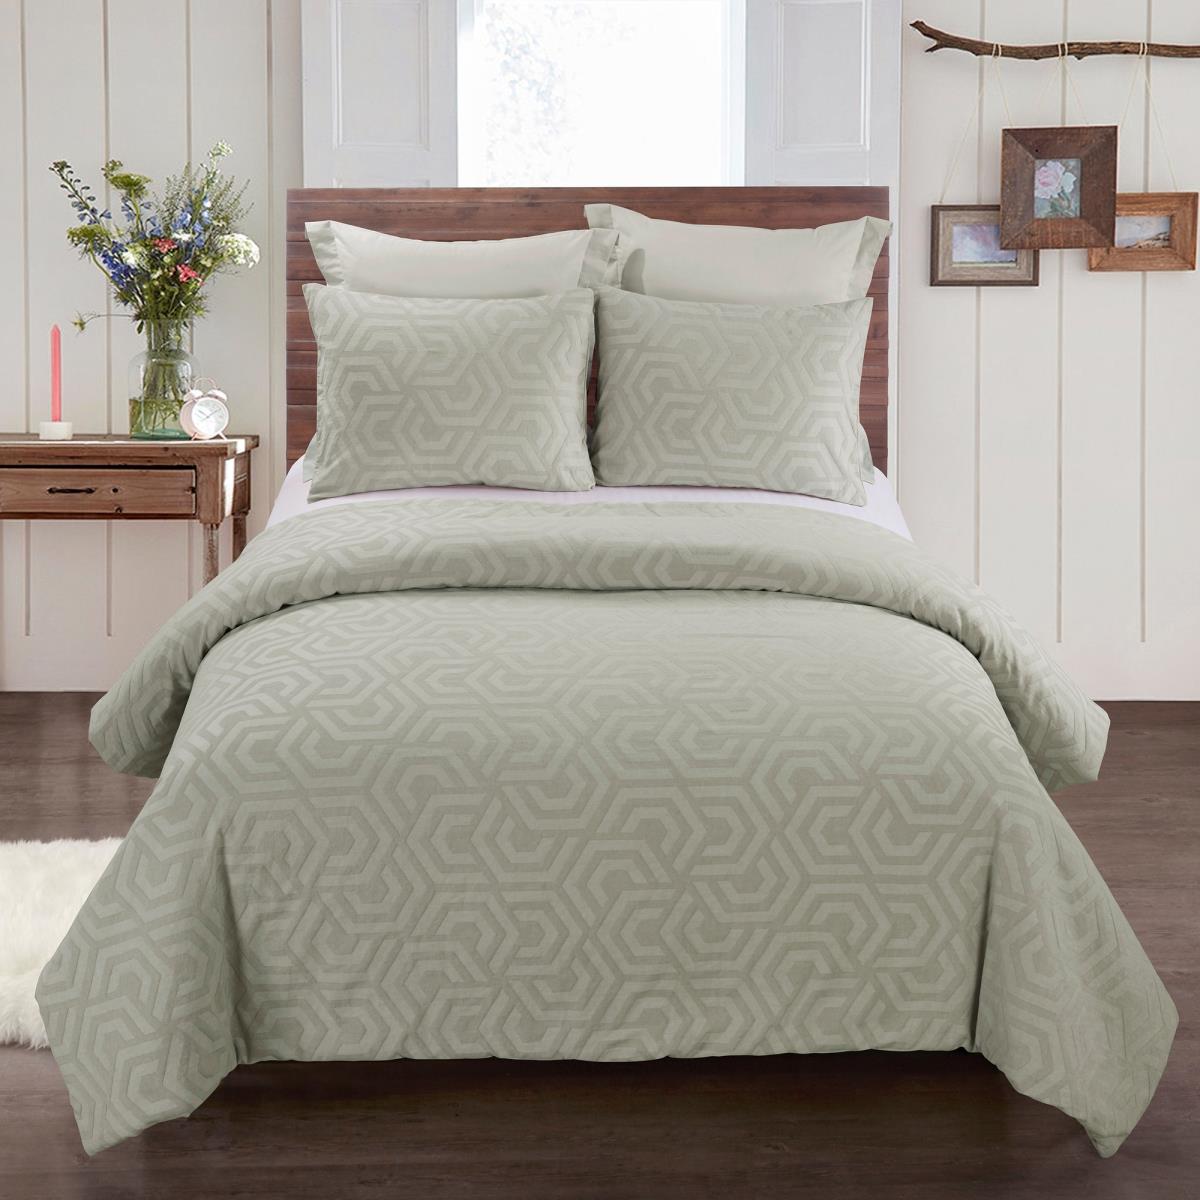 Y00711 King Size Comforter Set - Seville Sage